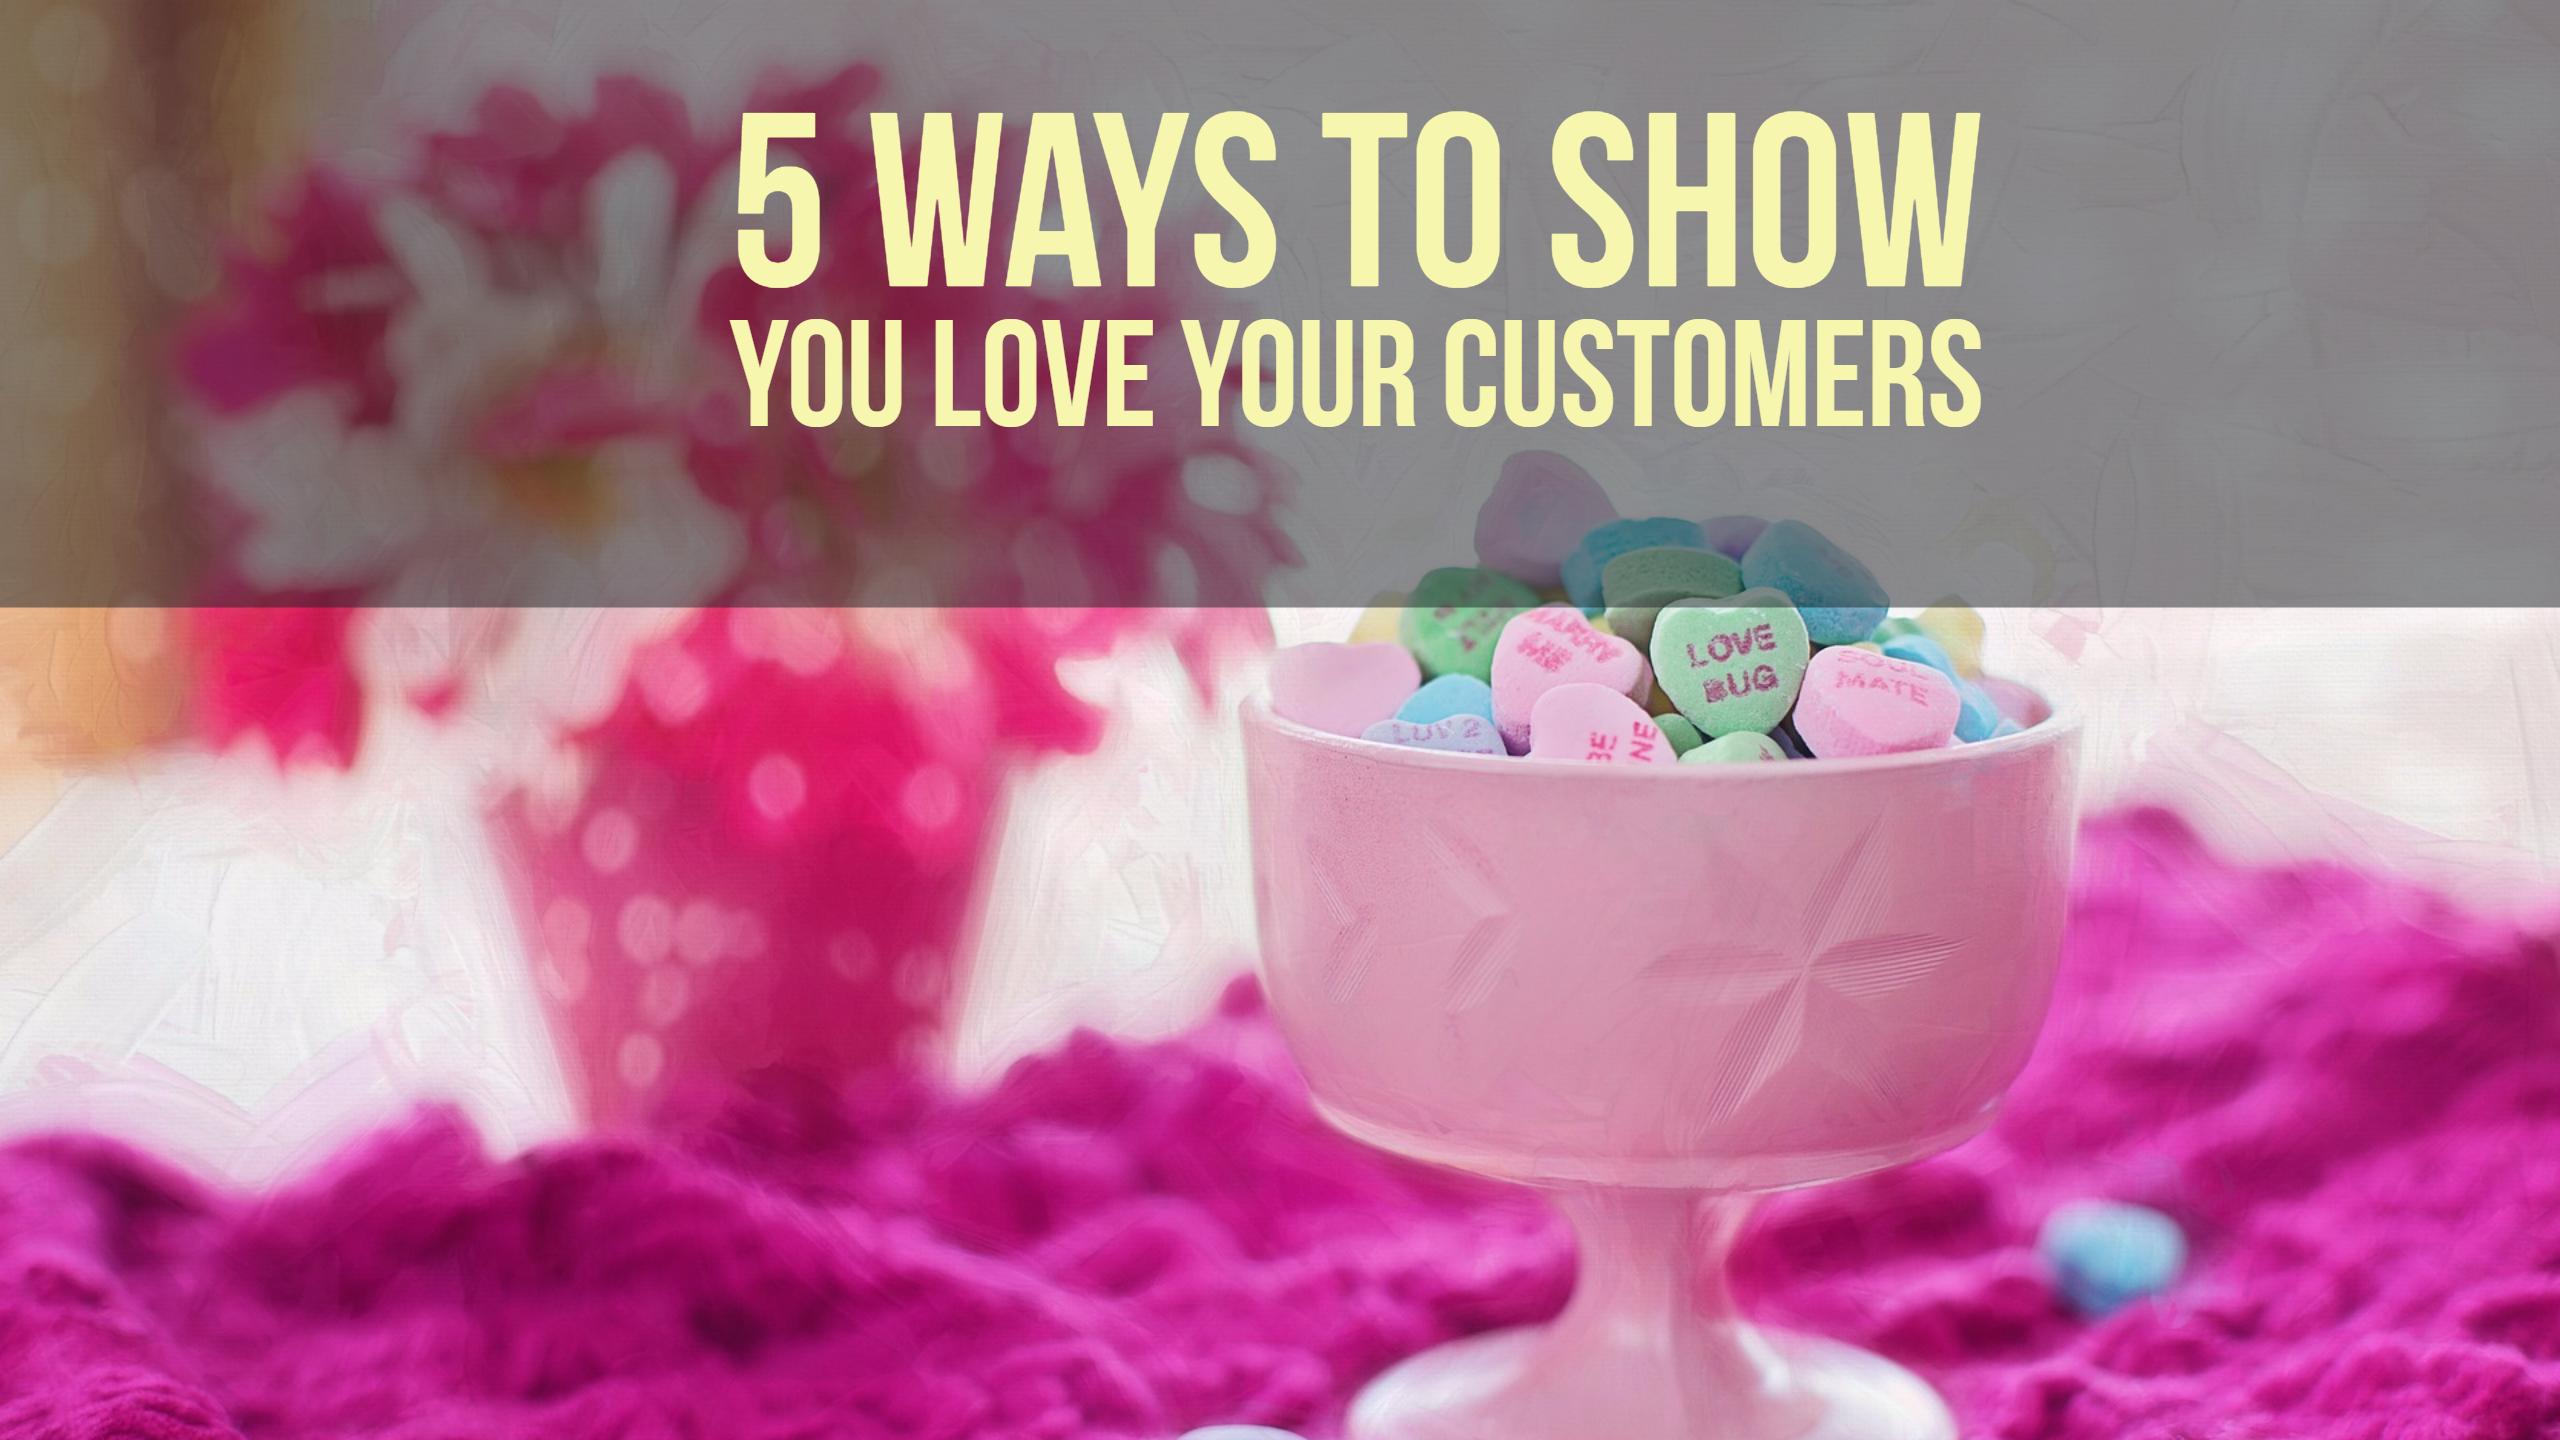 How do you show customer appreciation?